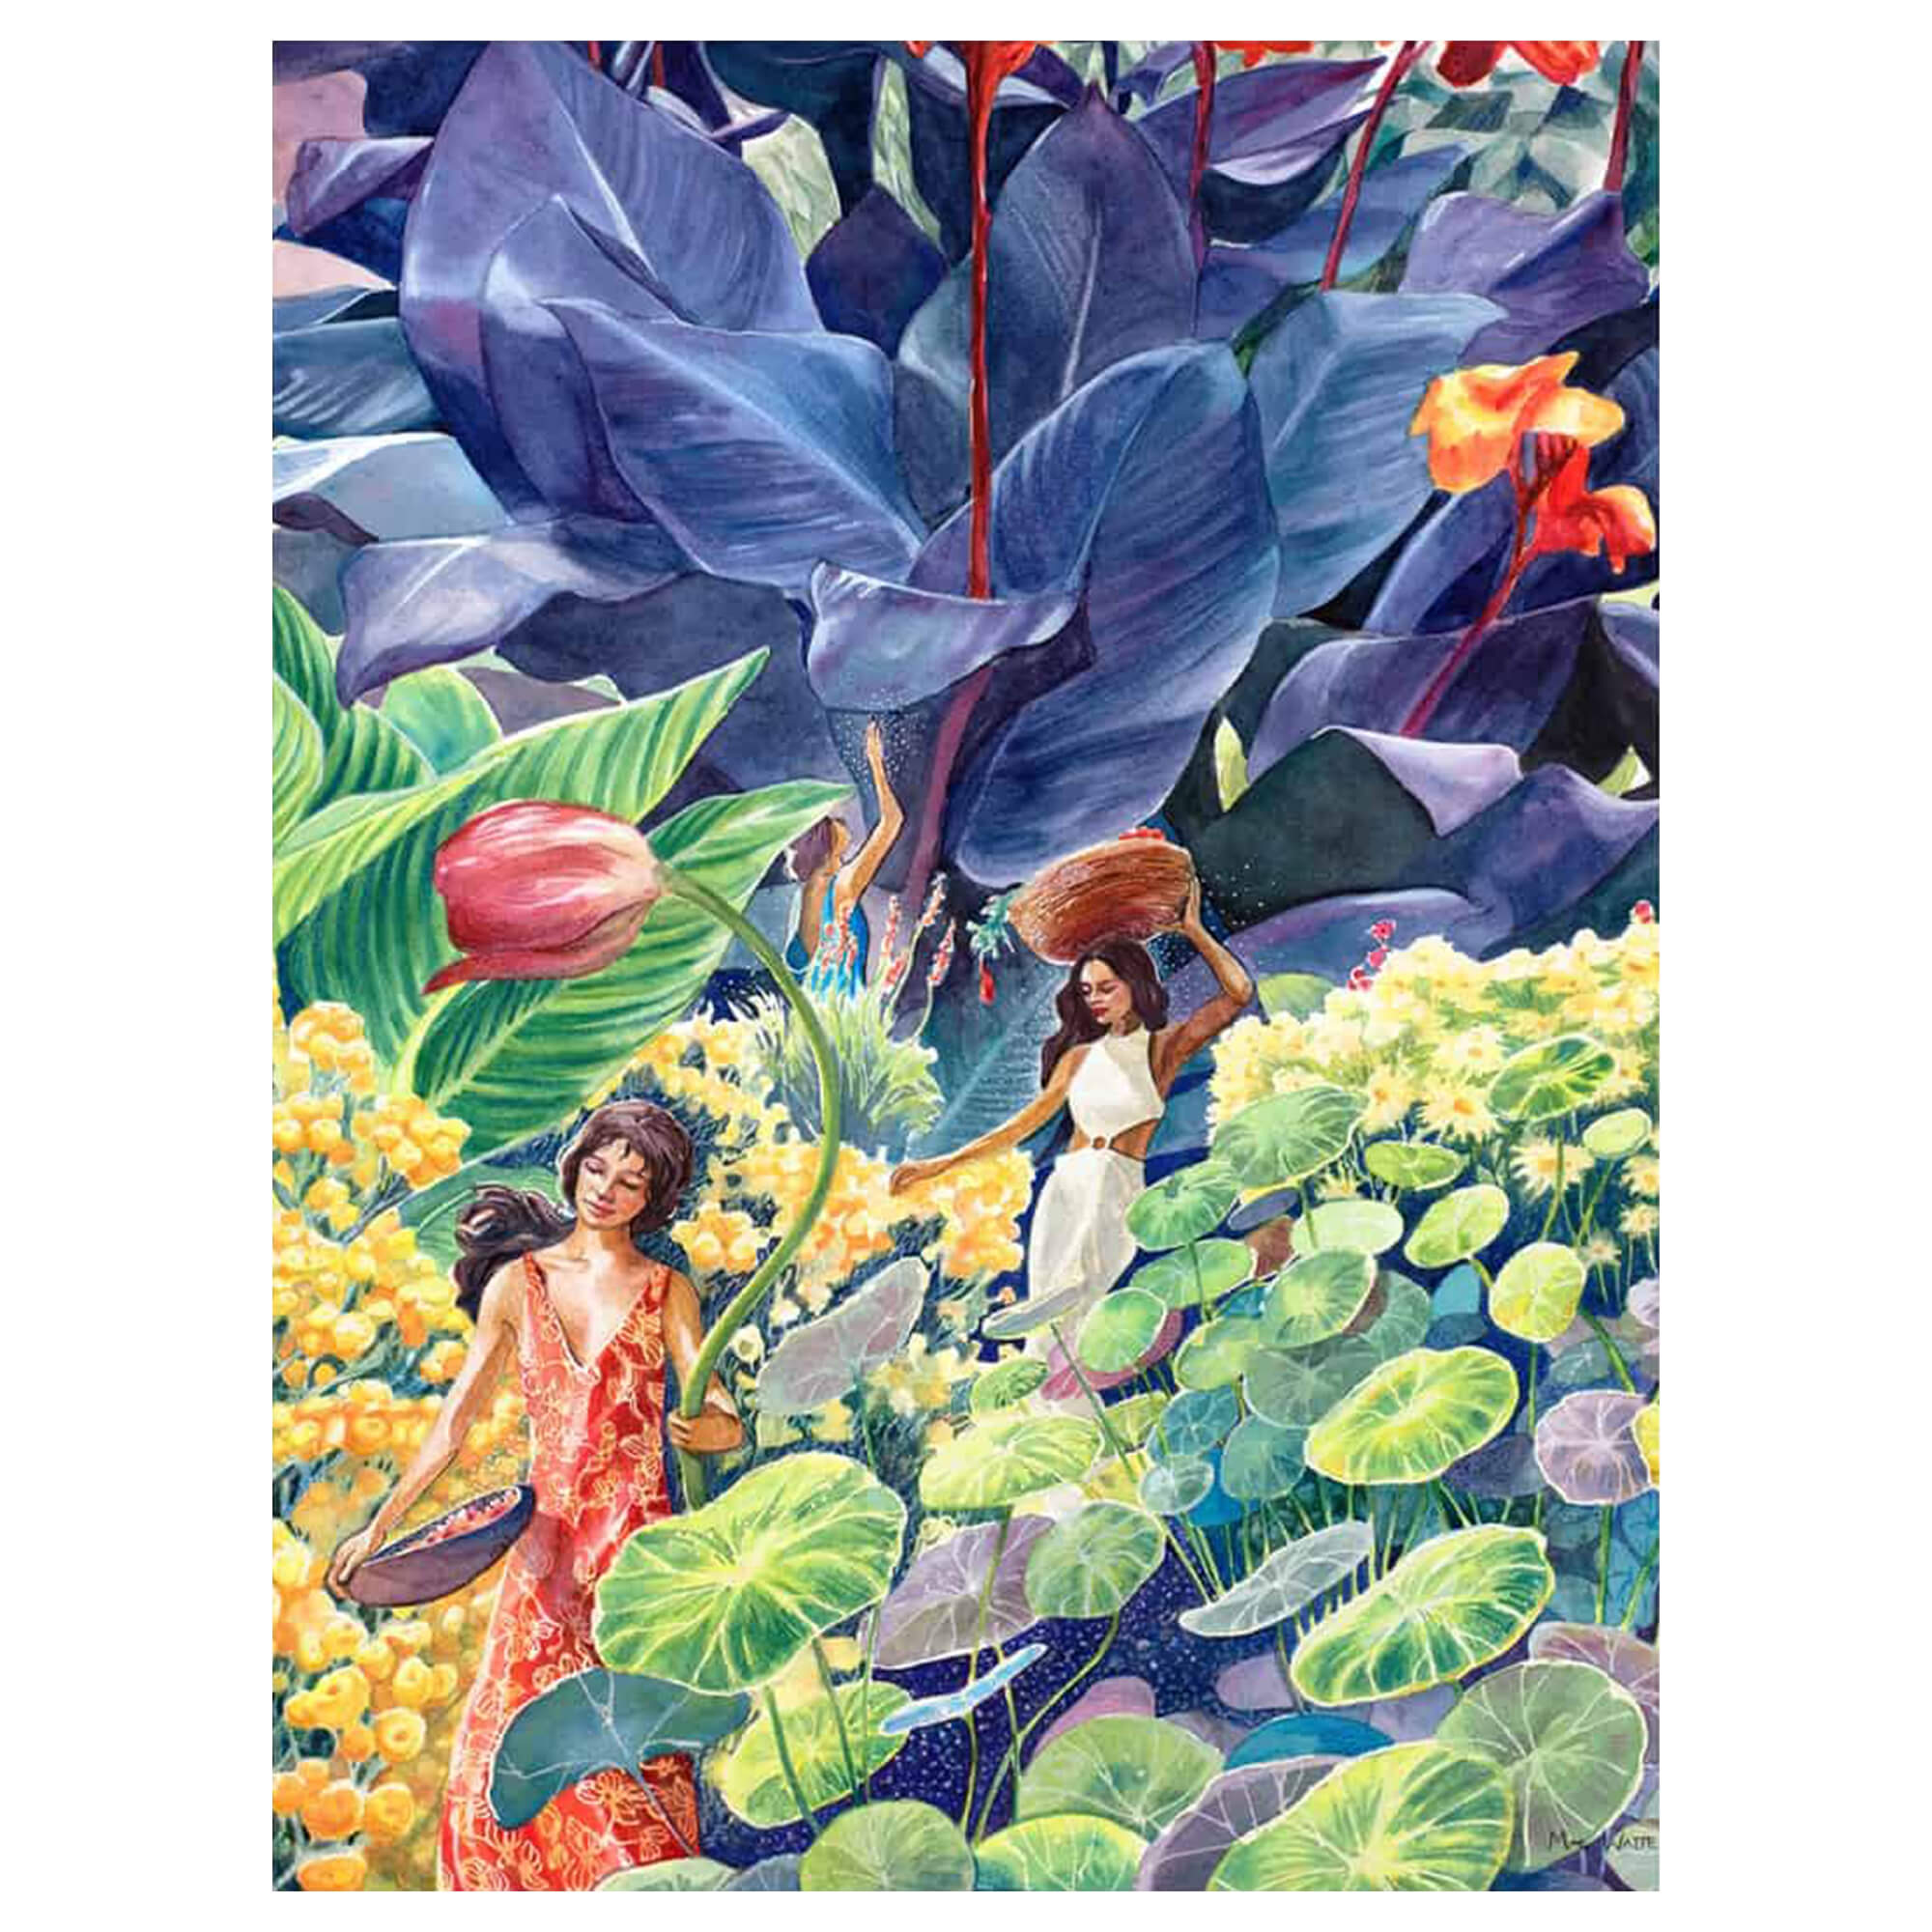 A canvas giclée art print of women amongst tropical flora by Hawaii artist Mae Waite